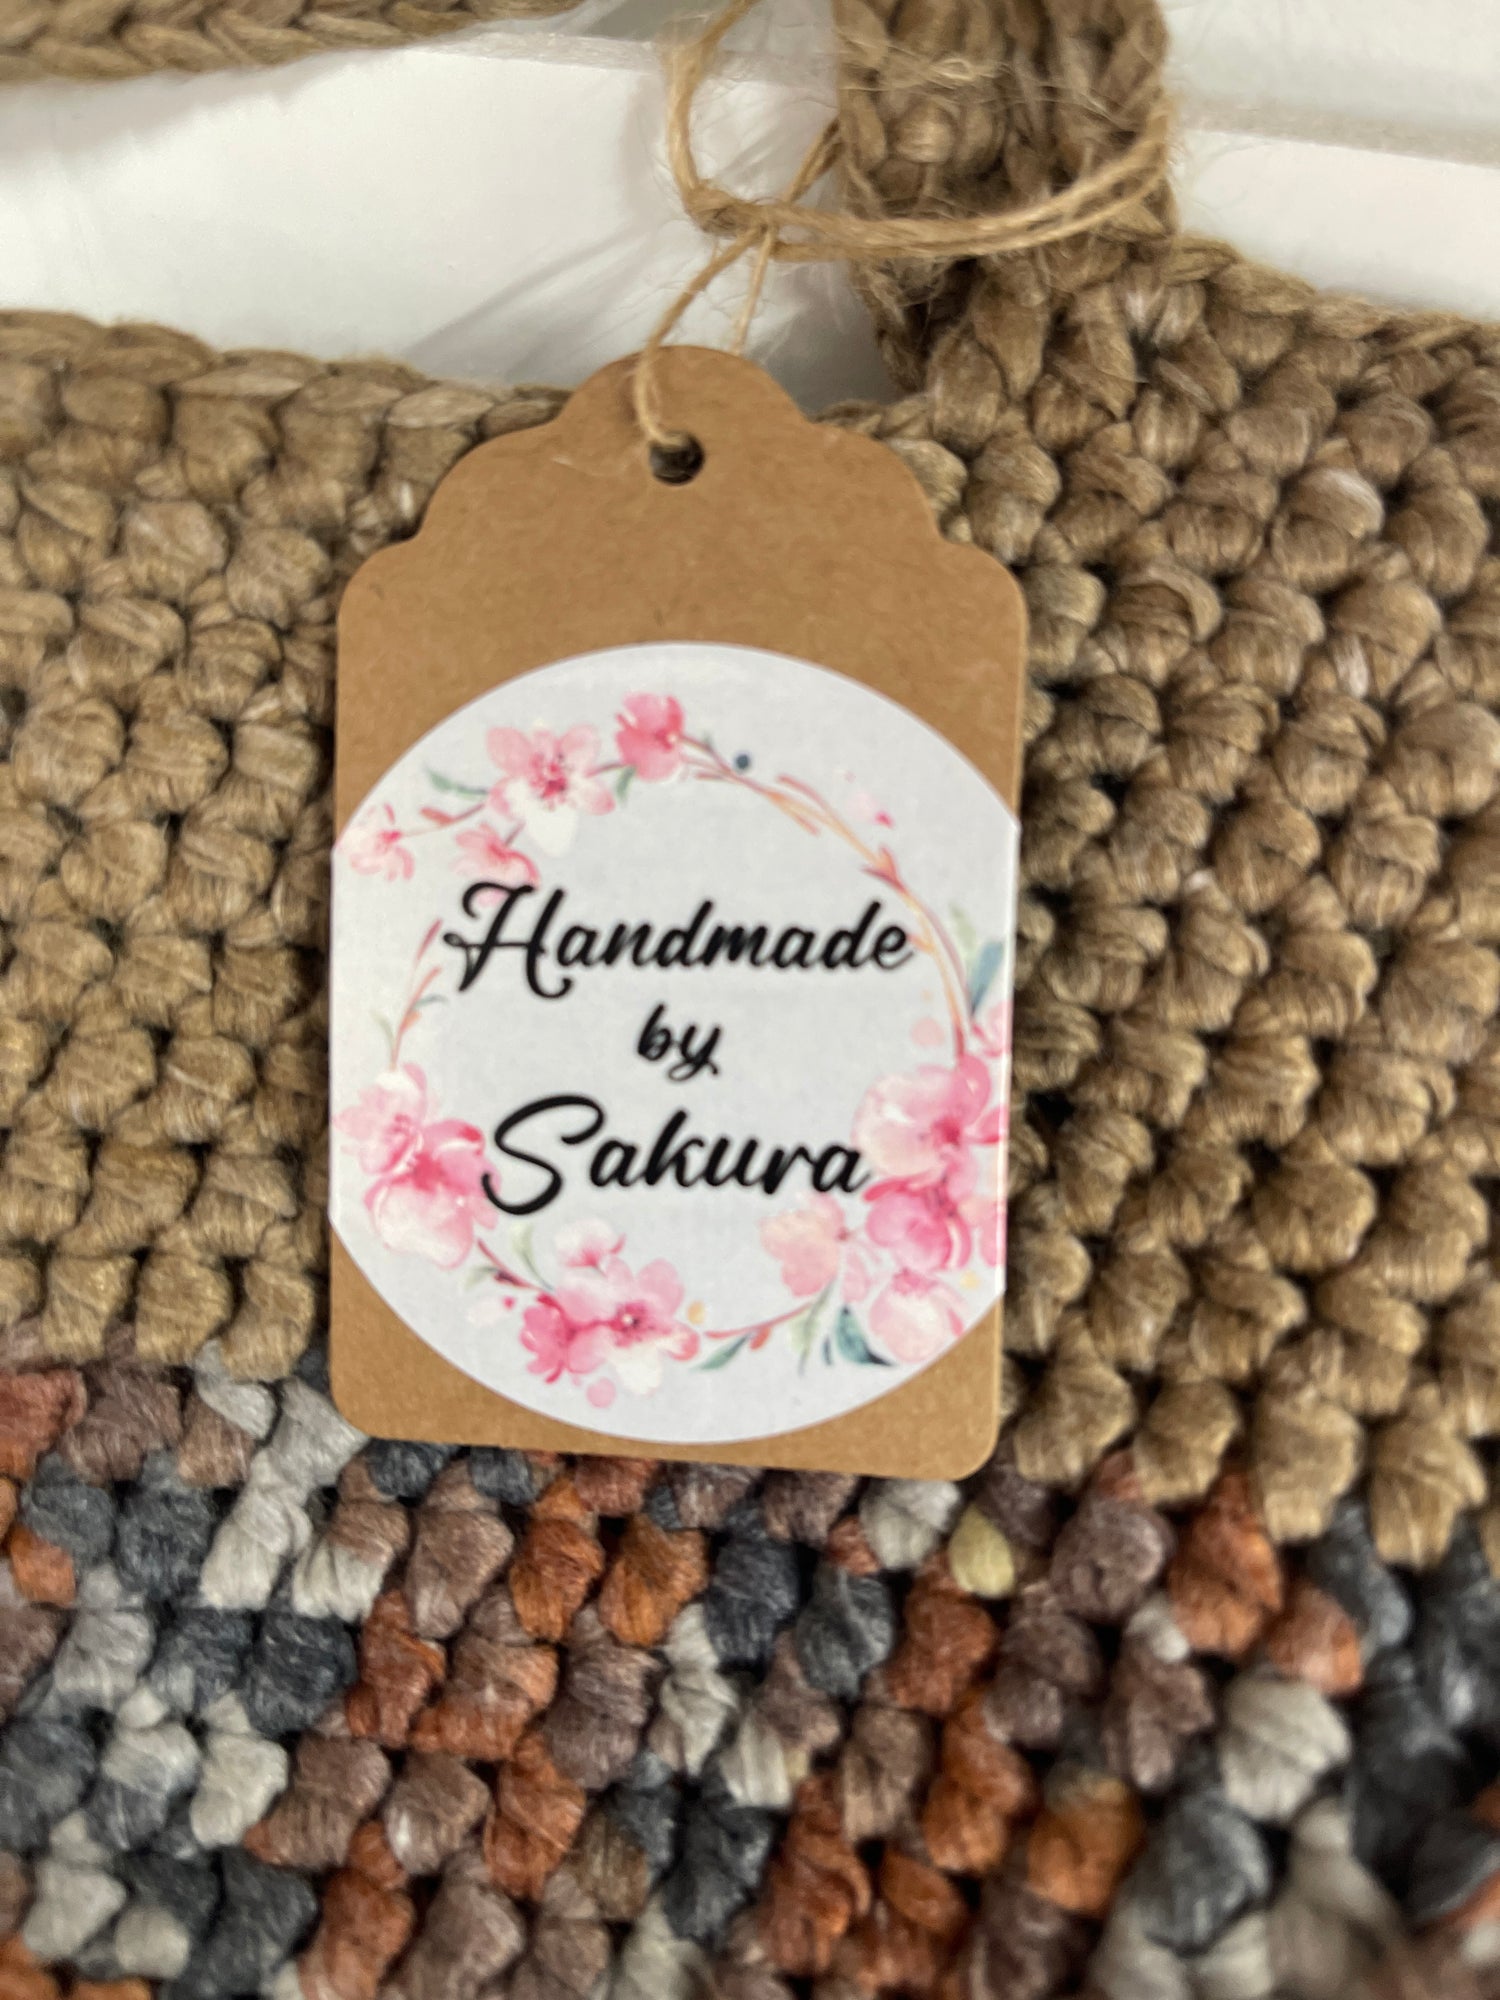 Handmade by Sakura